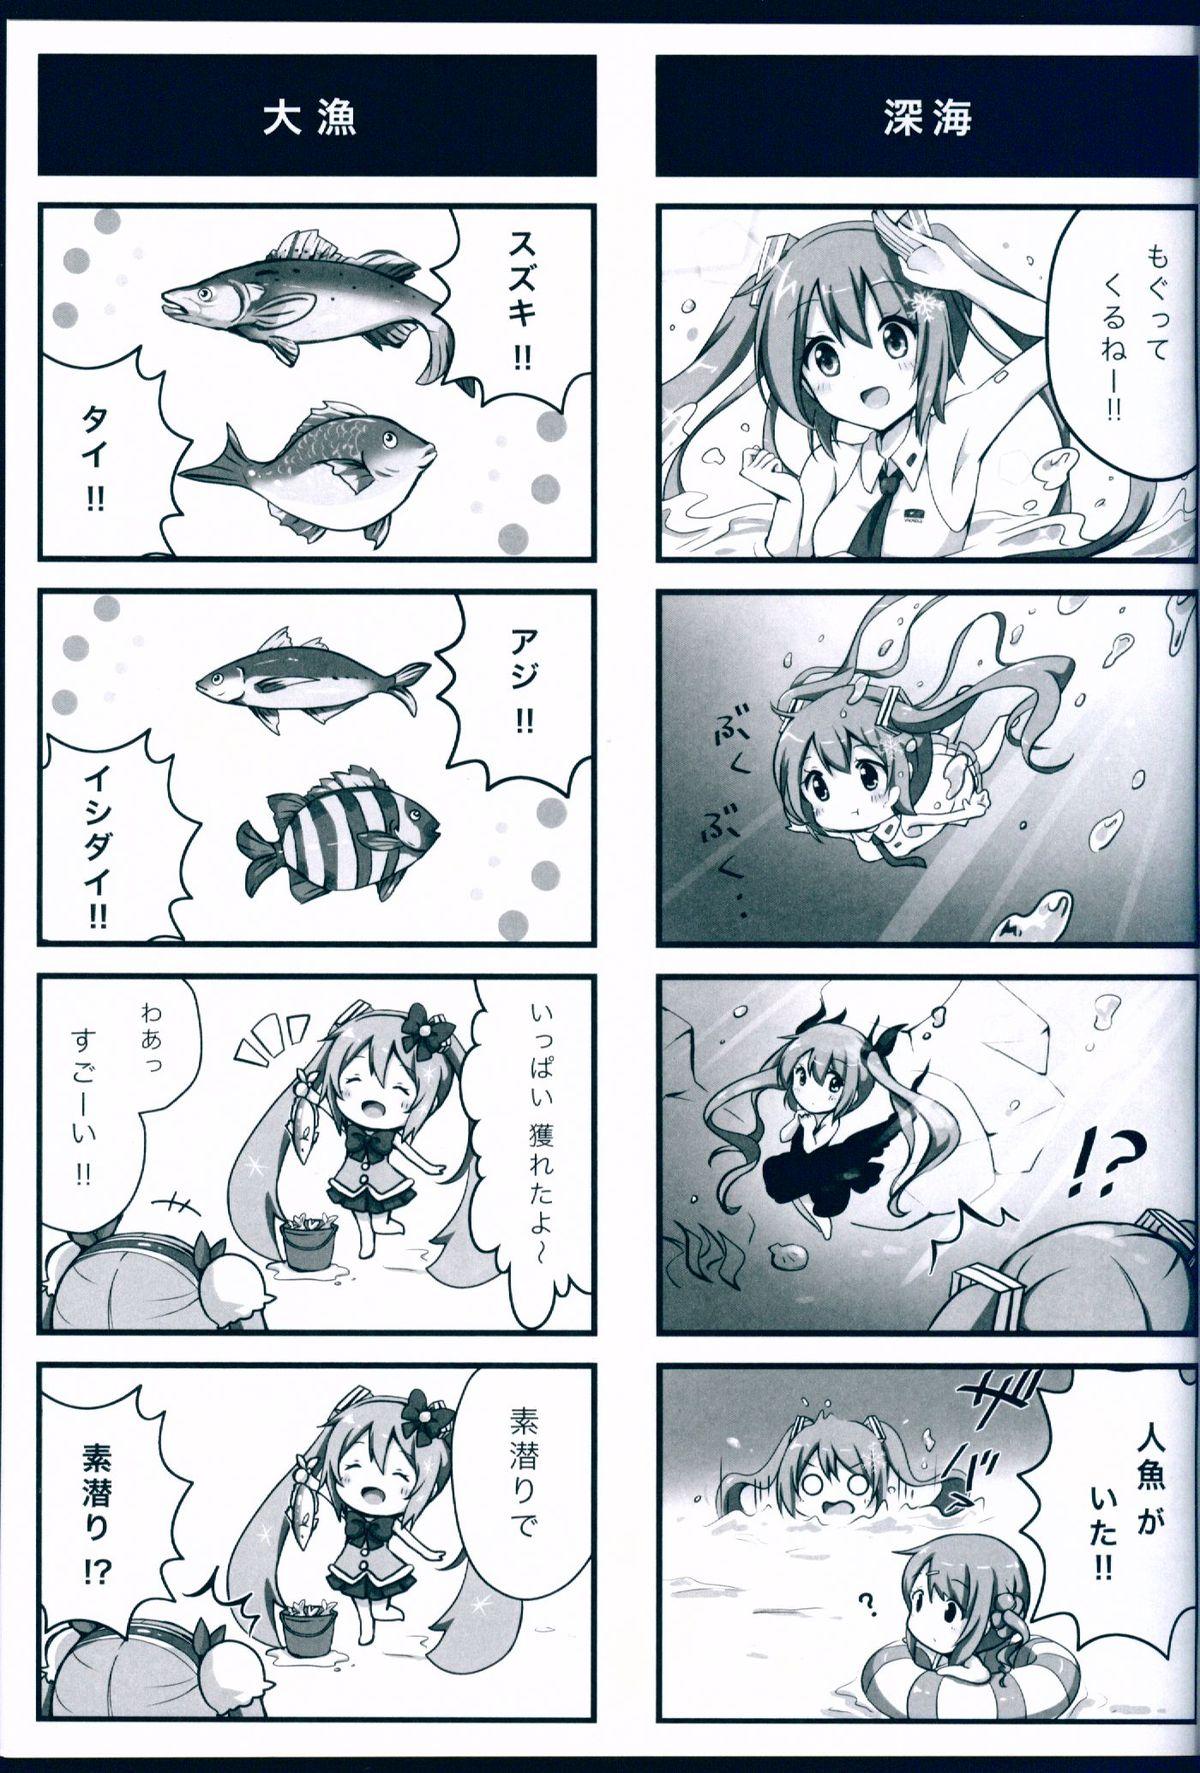 Pornstars Snow - Miku! - Vocaloid Licking - Page 7